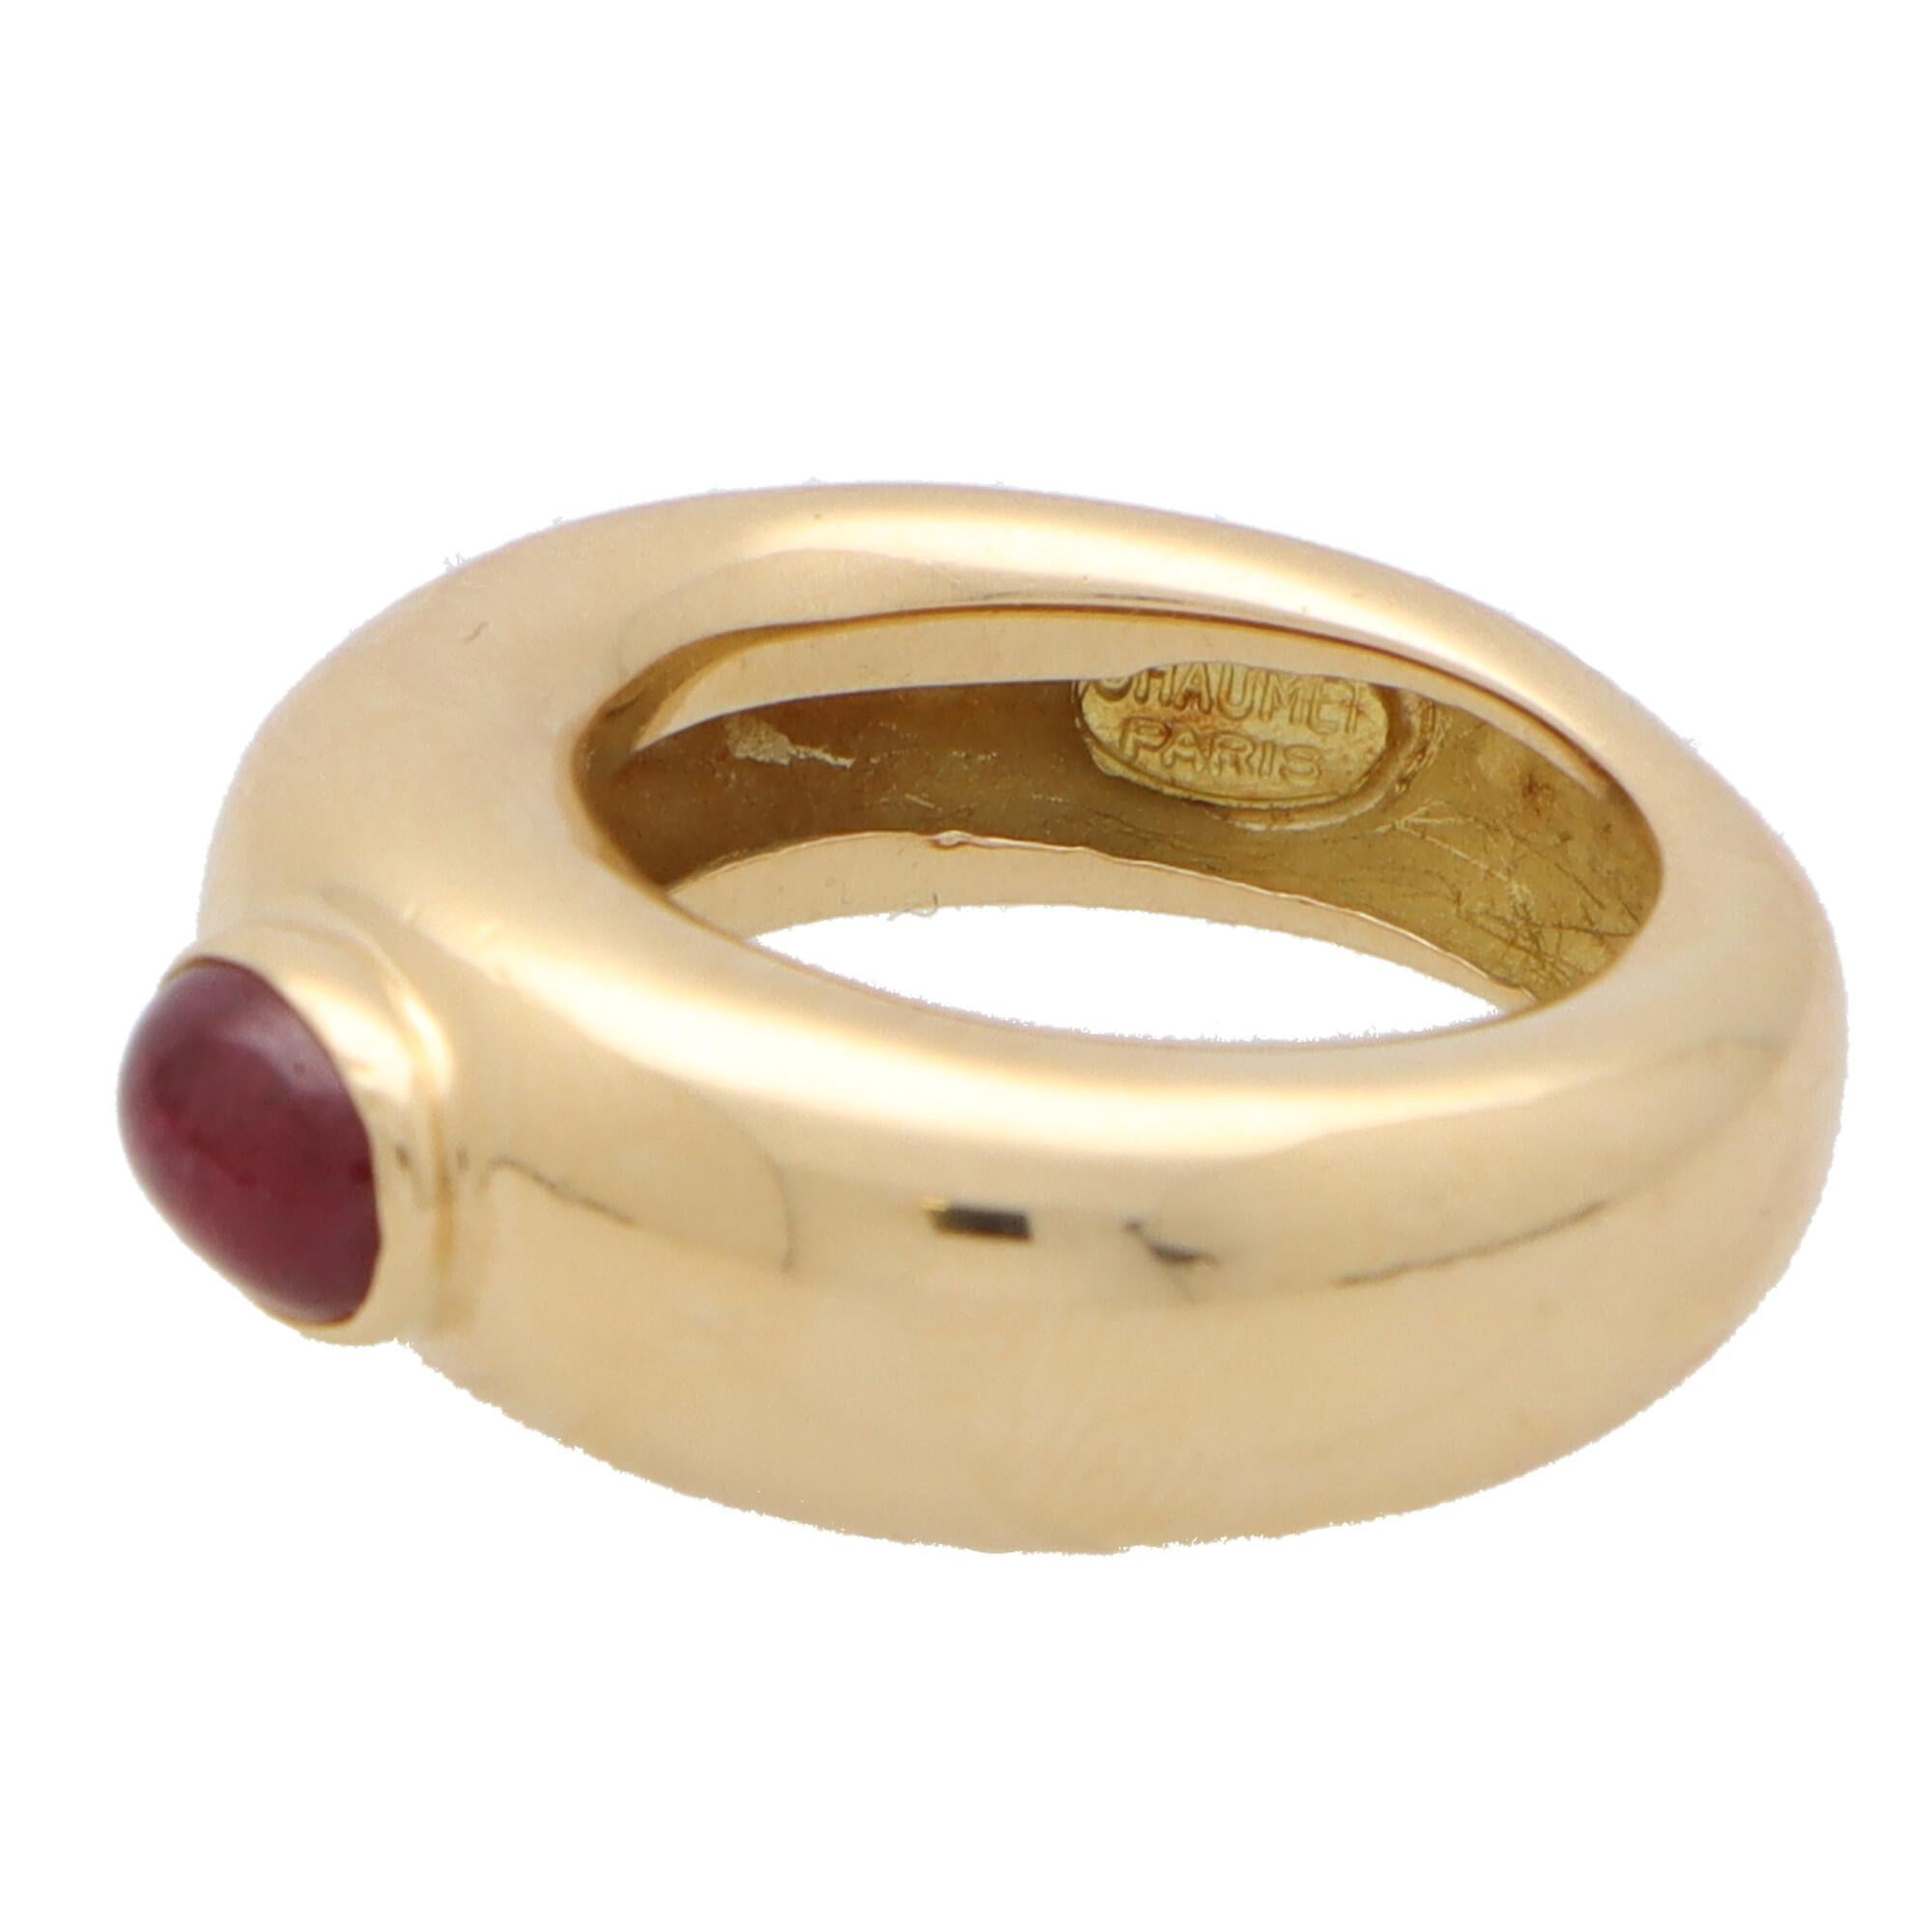 vintage chaumet ring